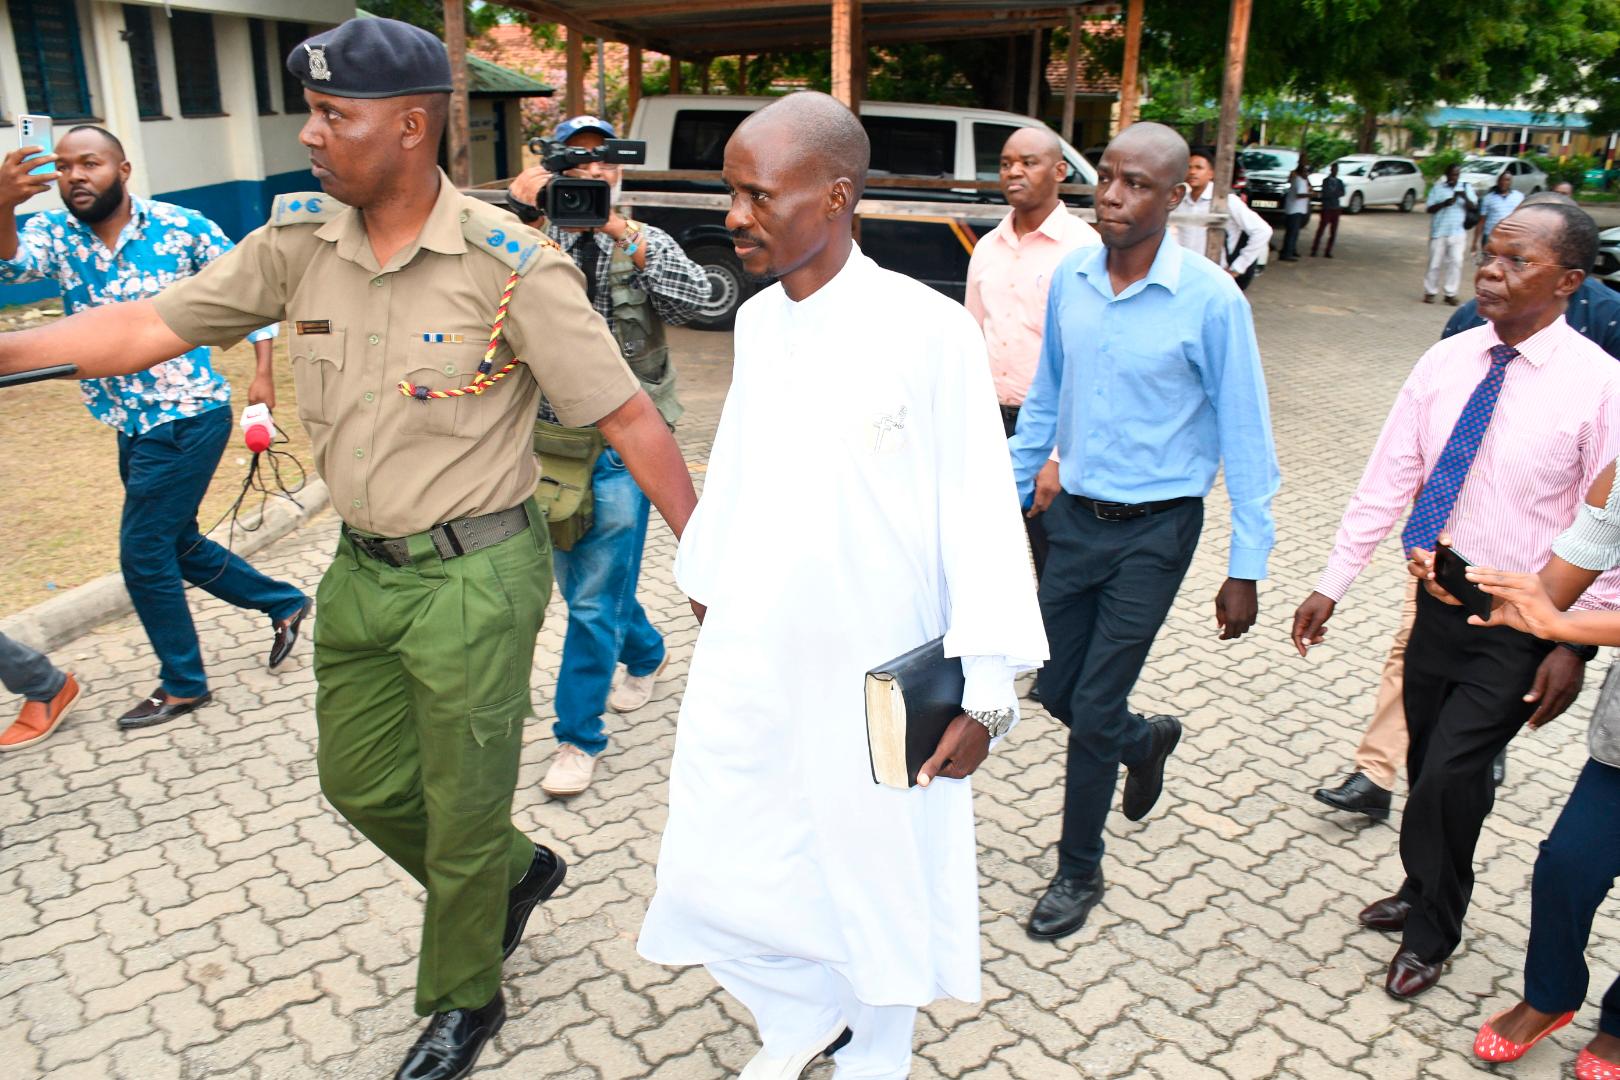 Ezekiel Odero, en av två åtalade sektledare, håller i en bibel medan han eskorteras av polis i Mombasa, Kenya.